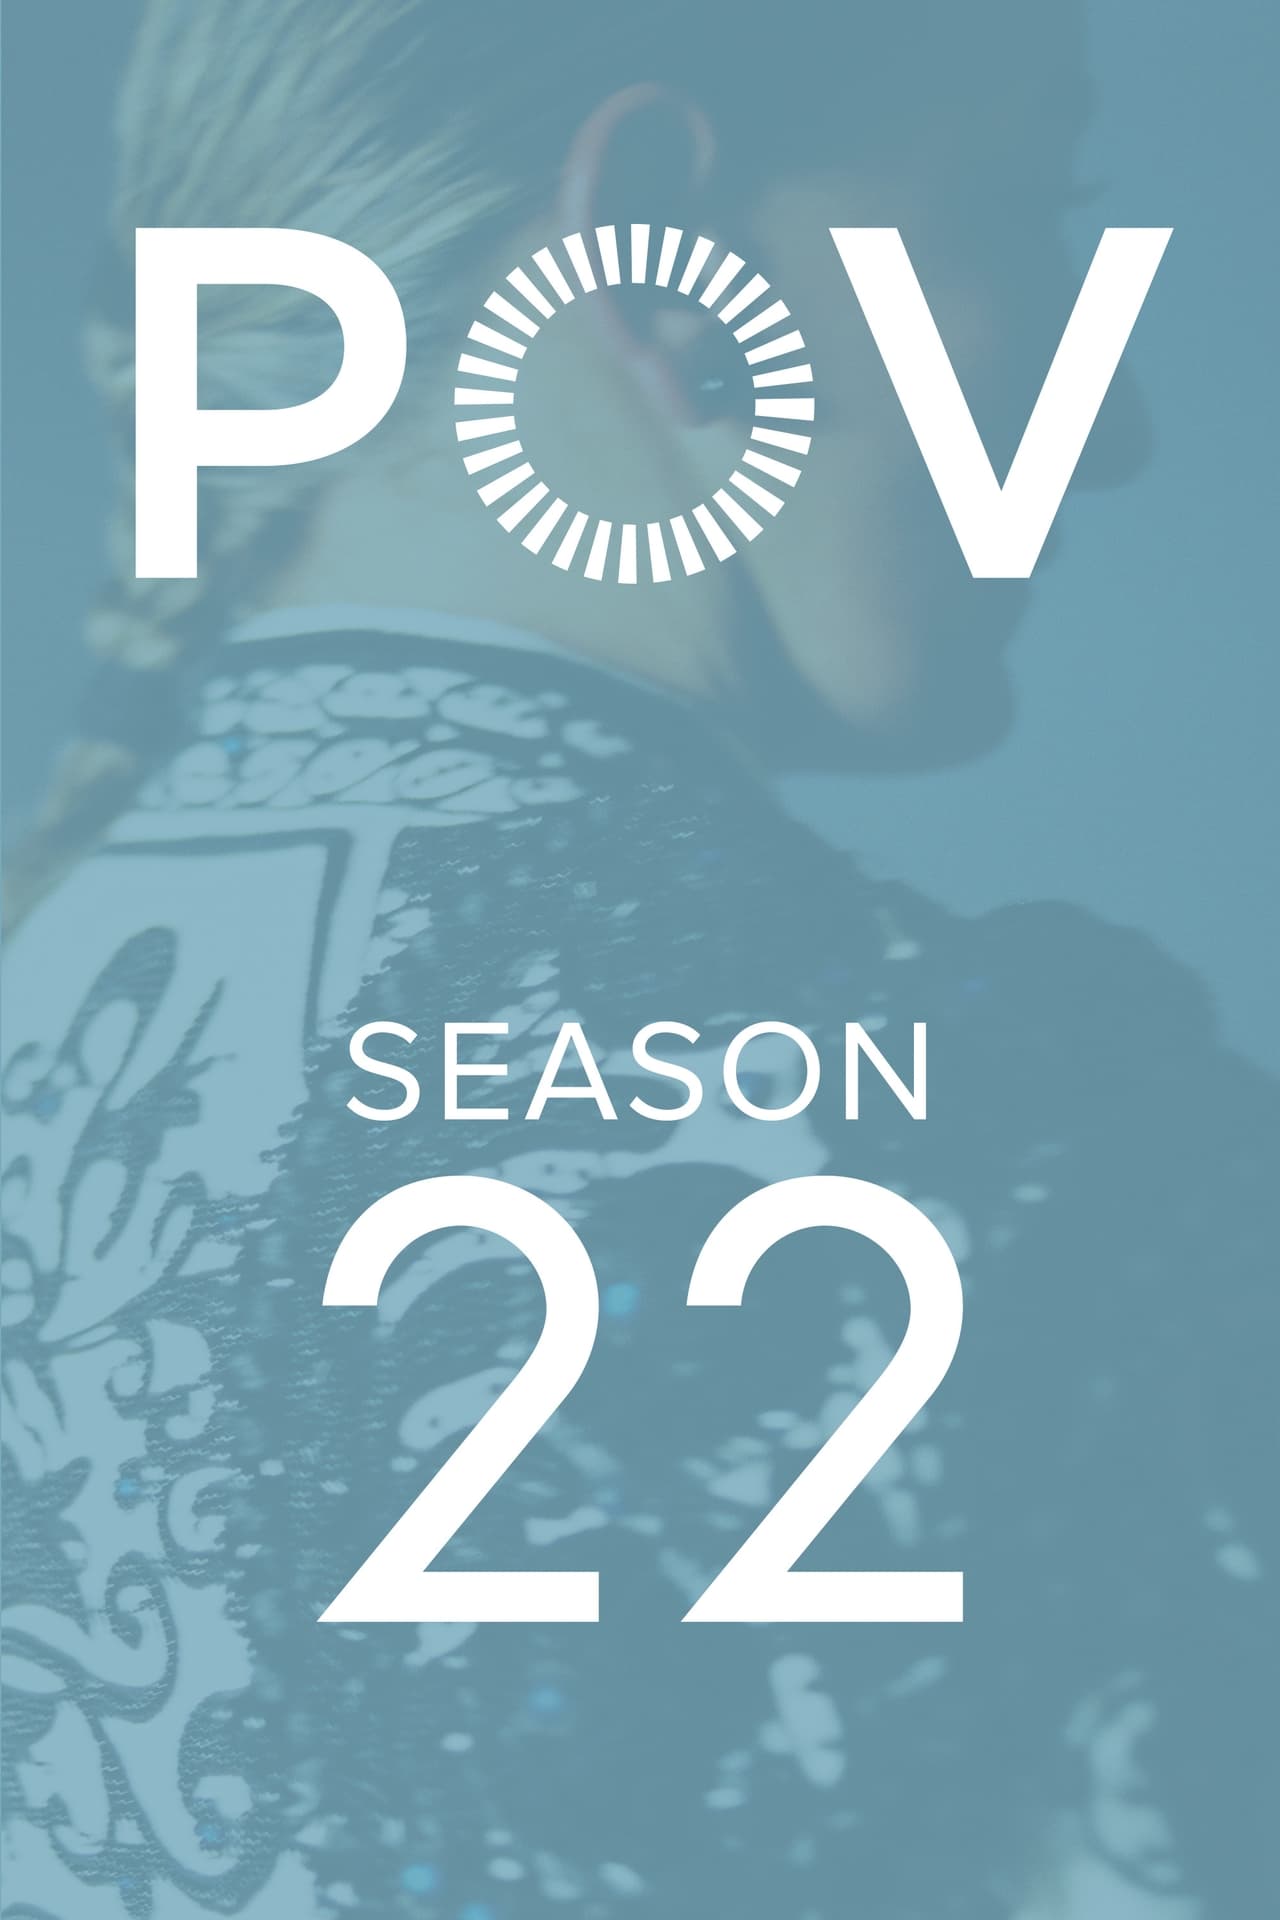 POV Season 22